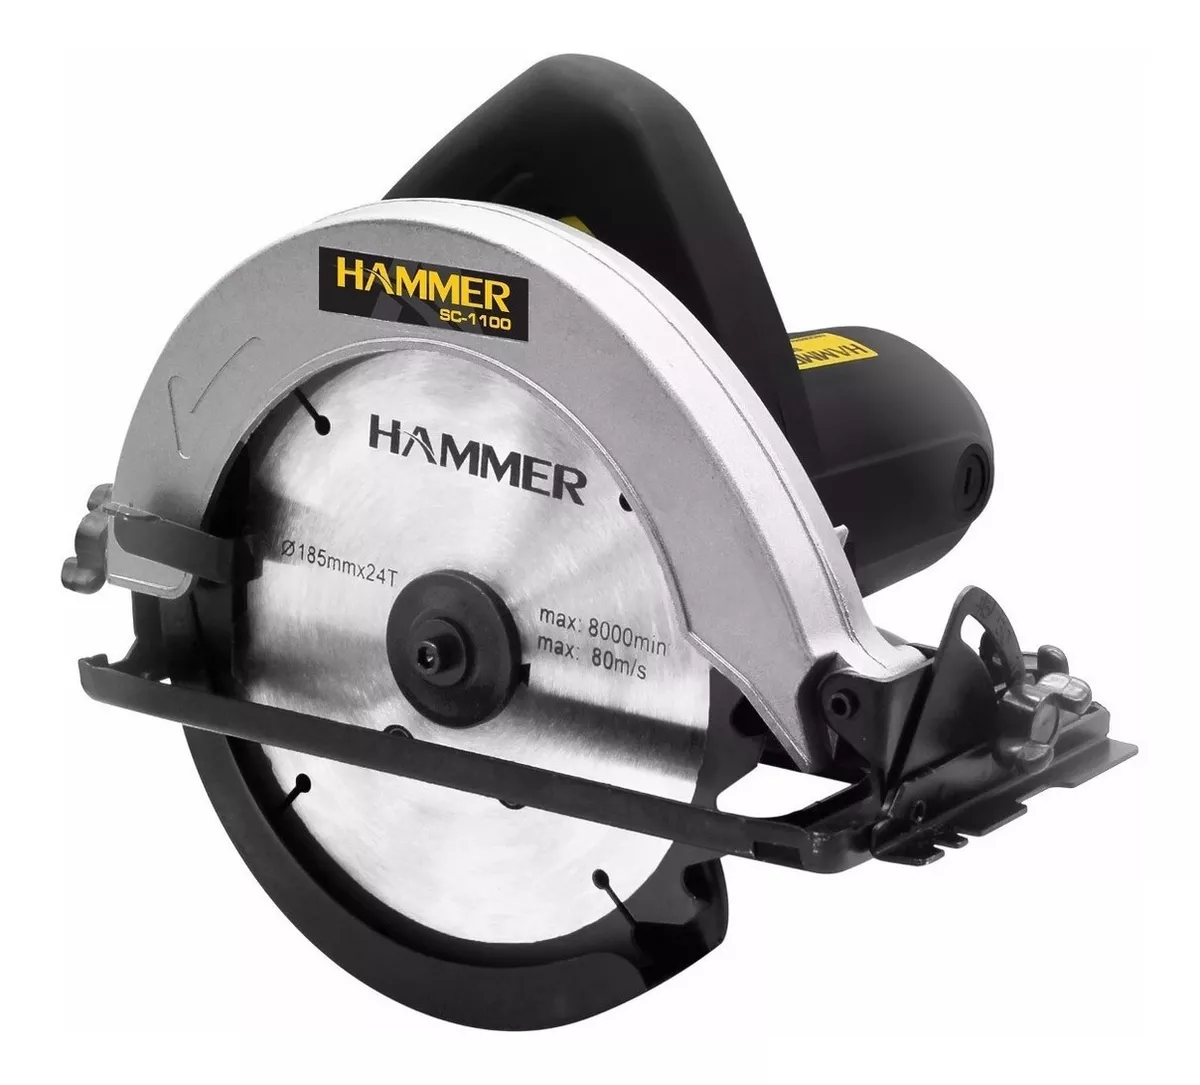 Serra Circular Elétrica Hammer Sc1100 185mm 1100w Petra 110v